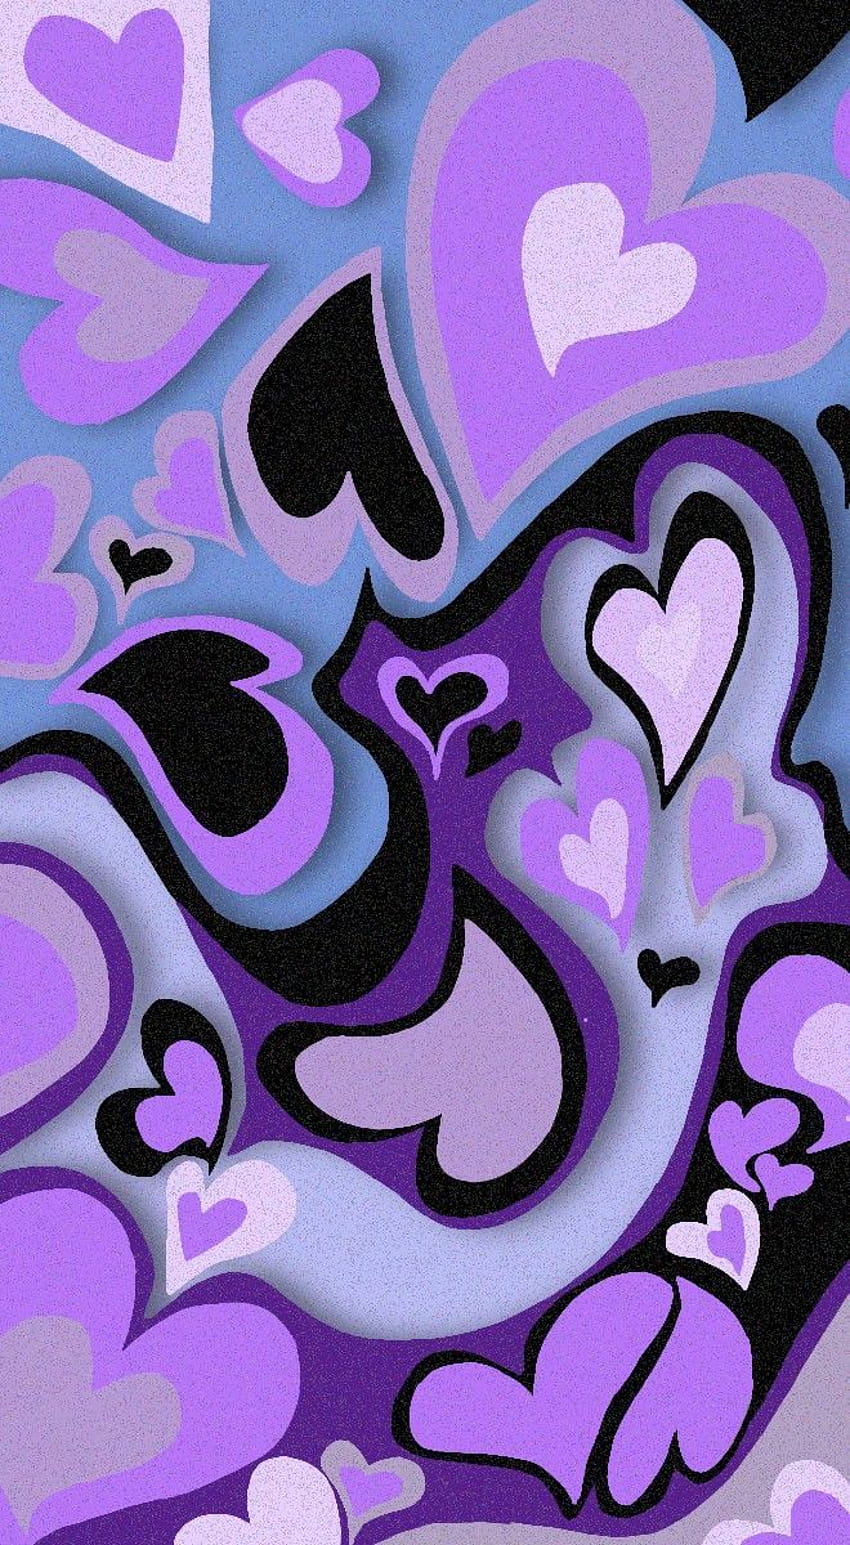 Purple Hearts in 2021, heart pfp HD phone wallpaper | Pxfuel